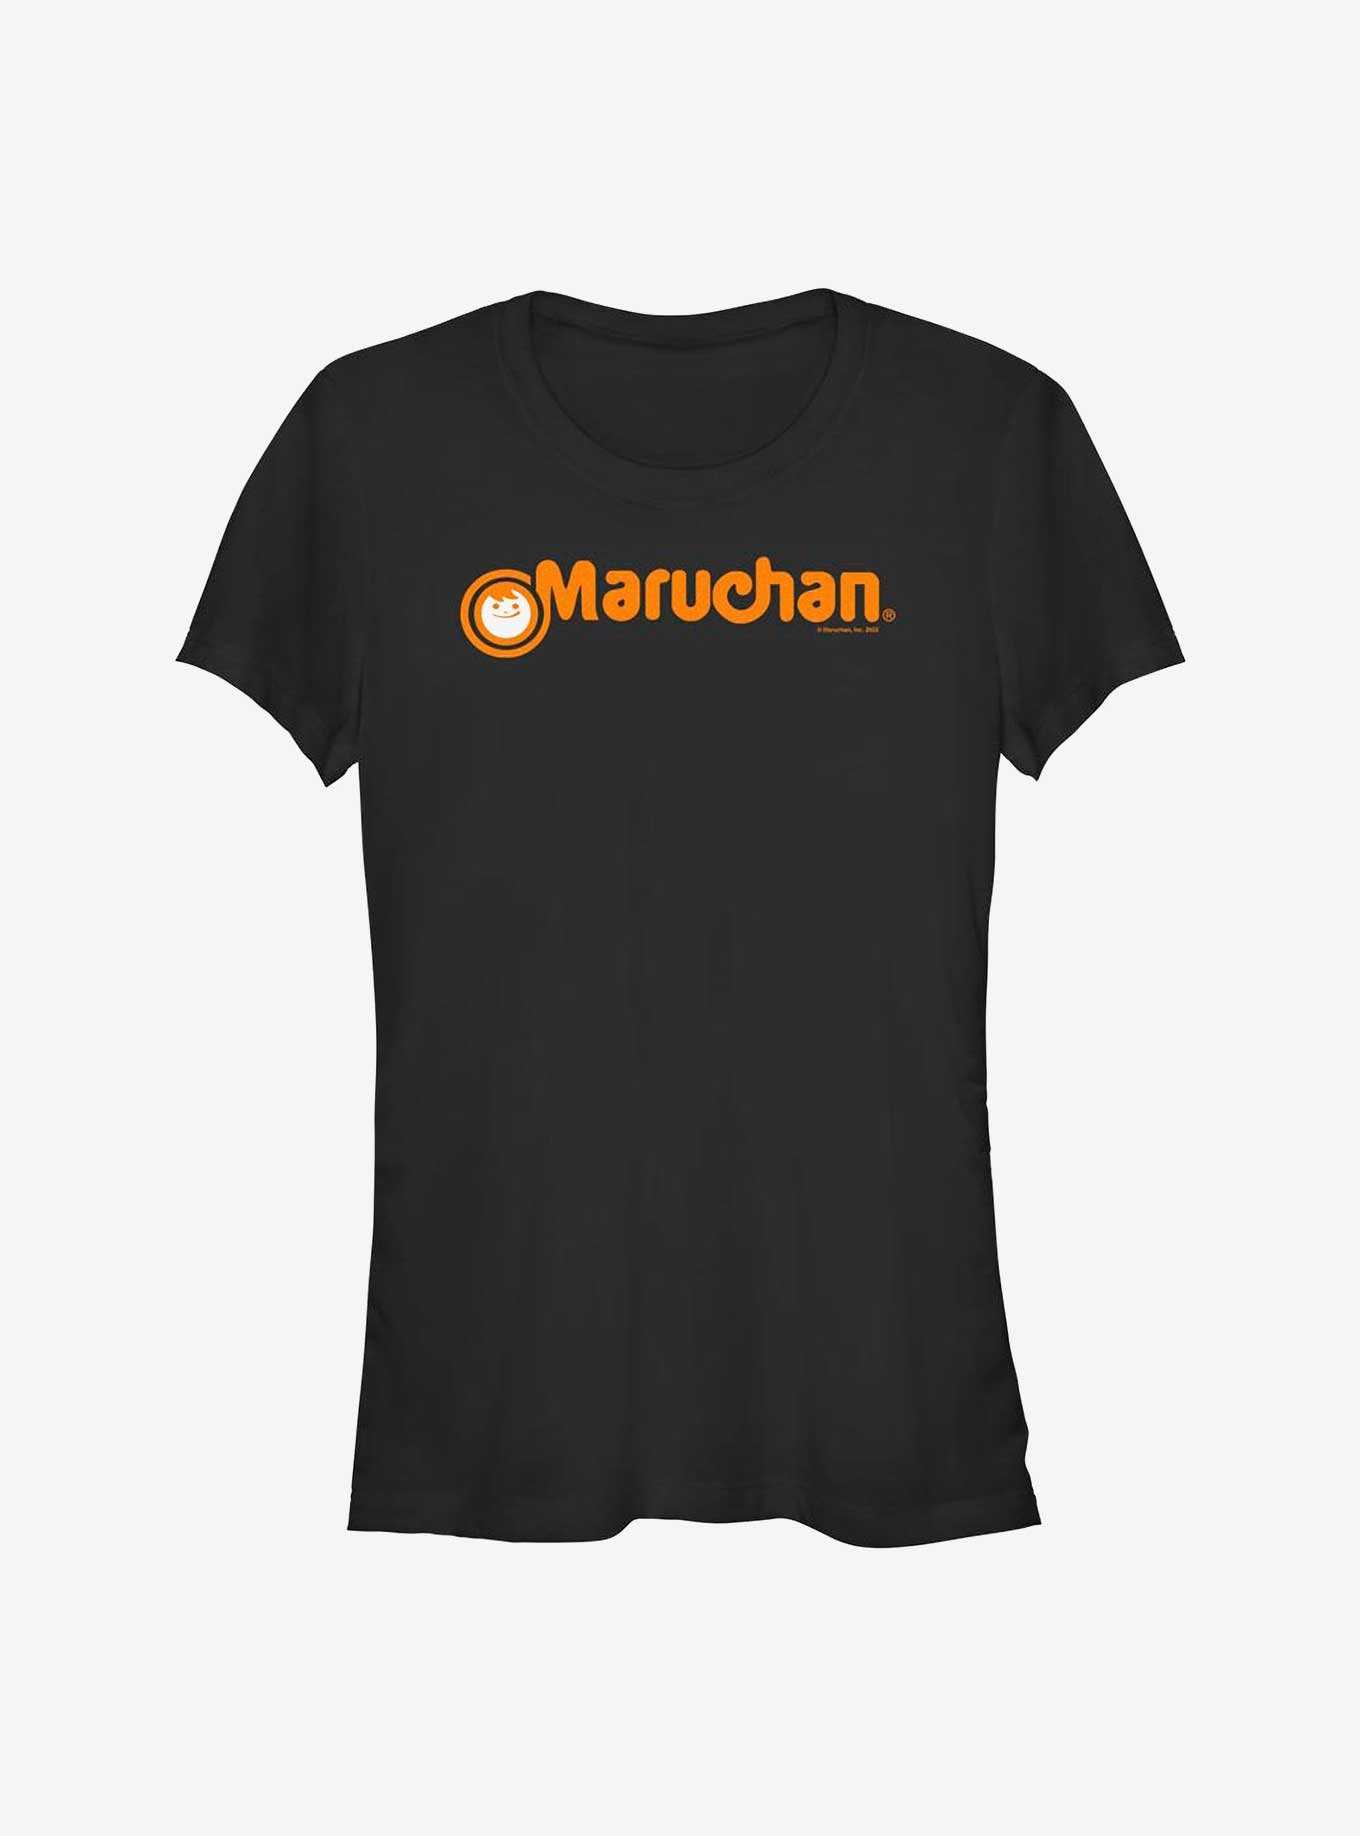 Maruchan Noodle Girls T-Shirt, , hi-res